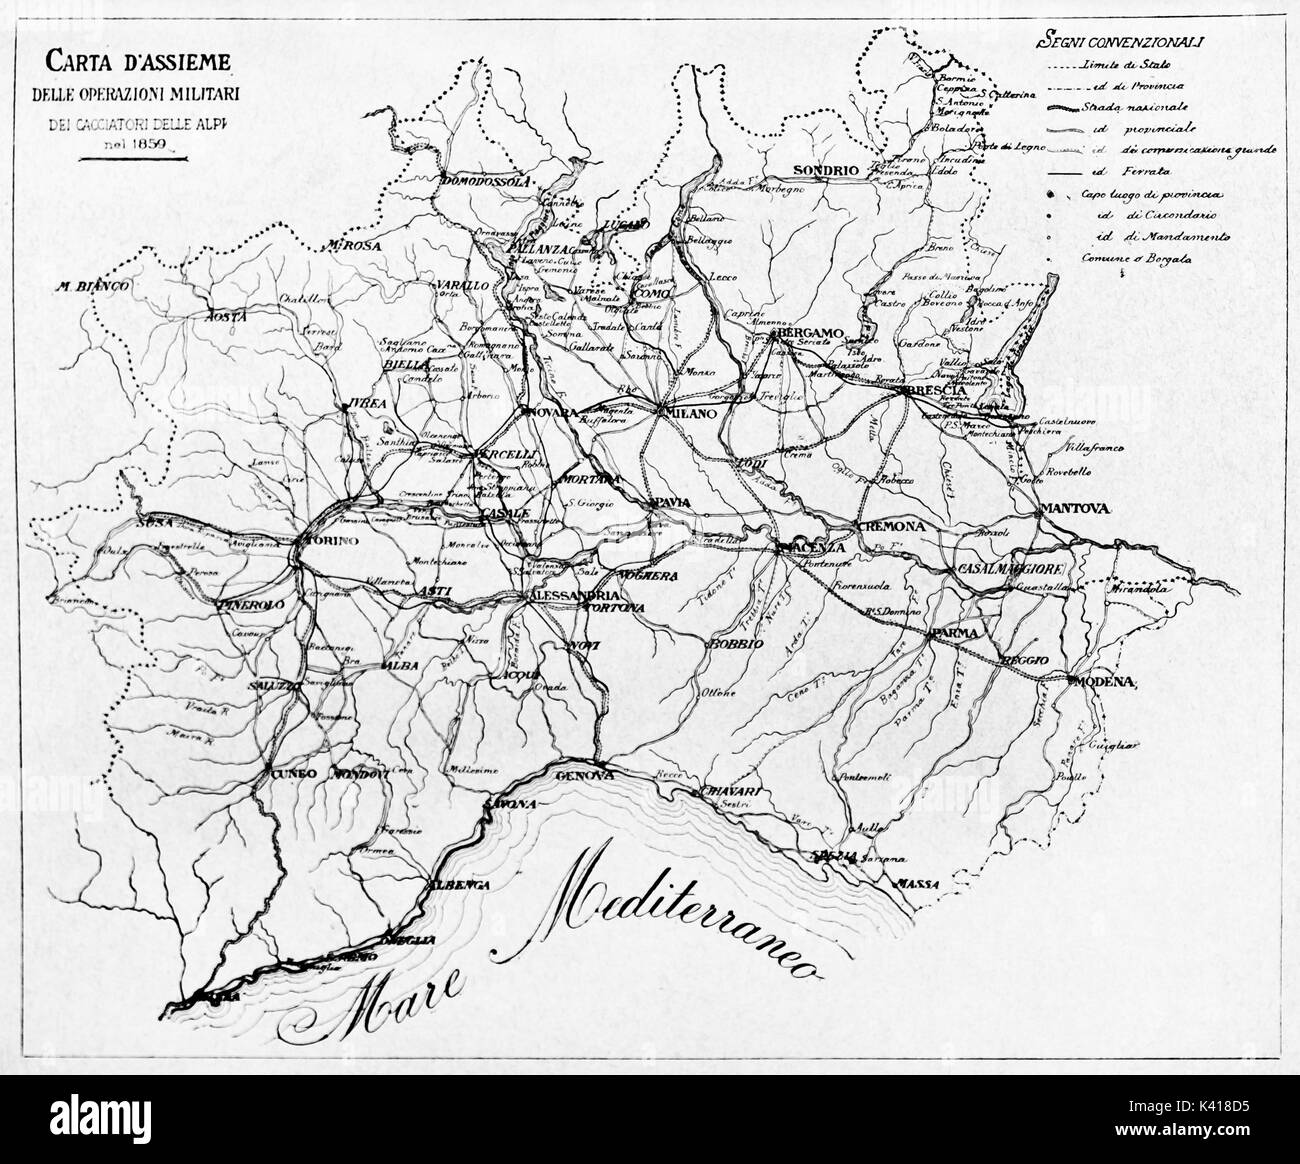 Alte schwarz-weiße Karte von Jägern der Alpen militärische Aktionen im Jahr 1859. Durch E.Matania auf Garibaldi e i Suoi Tempi Mailand Italien 1884 veröffentlicht. Stockfoto